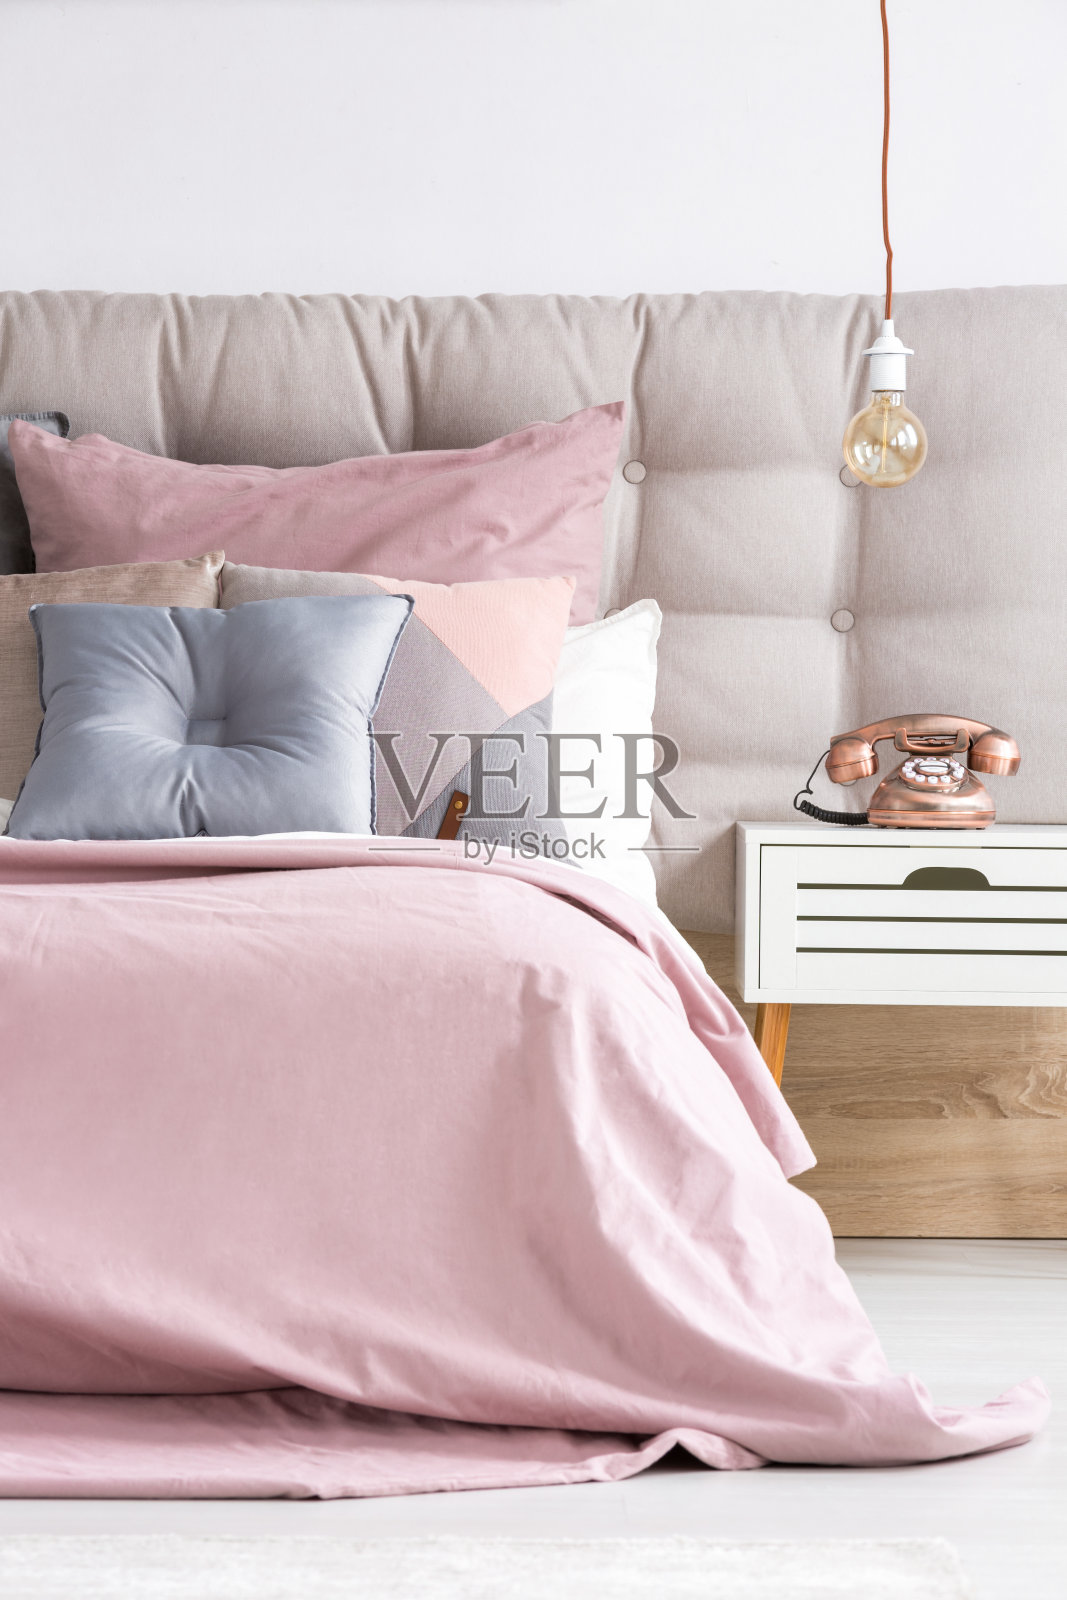 床上有柔软的粉红色被单照片摄影图片